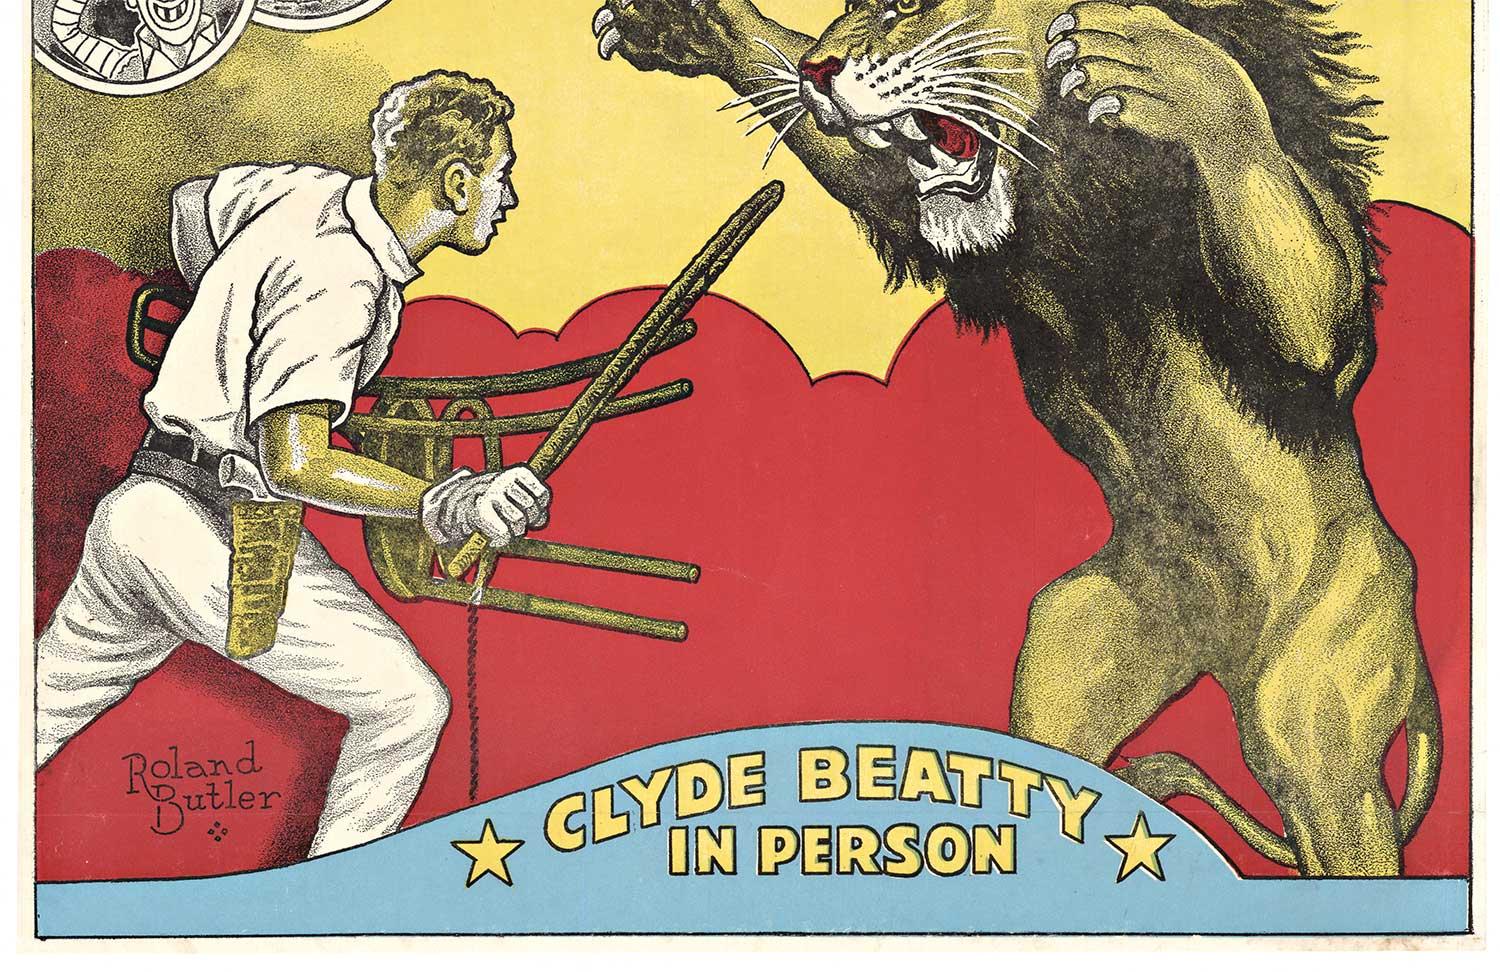 Clyde Beatty - Cole Bros. kombiniertes Original-Vintage-Poster, Circus – Print von Roland Butler